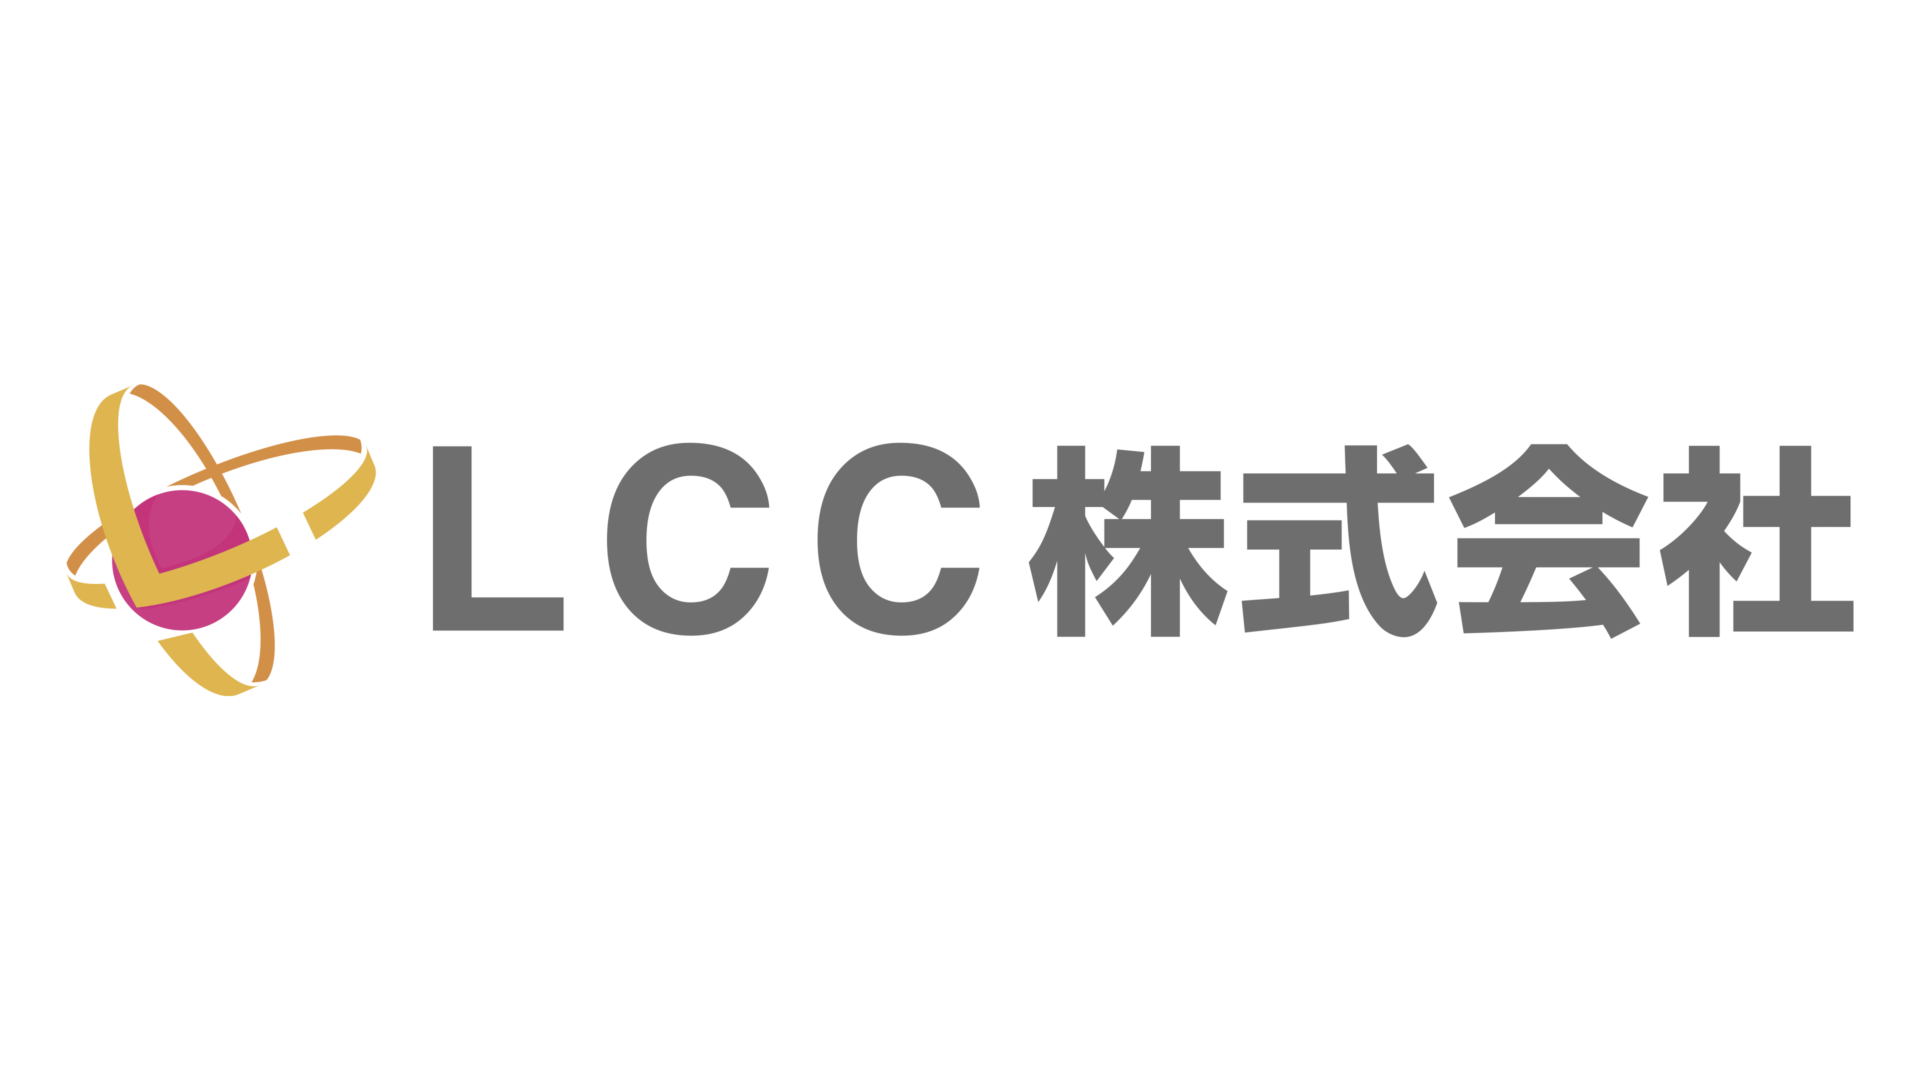 LCC株式会社 - 出雲市・松江市の解体工事、不用品処分、遺品整理